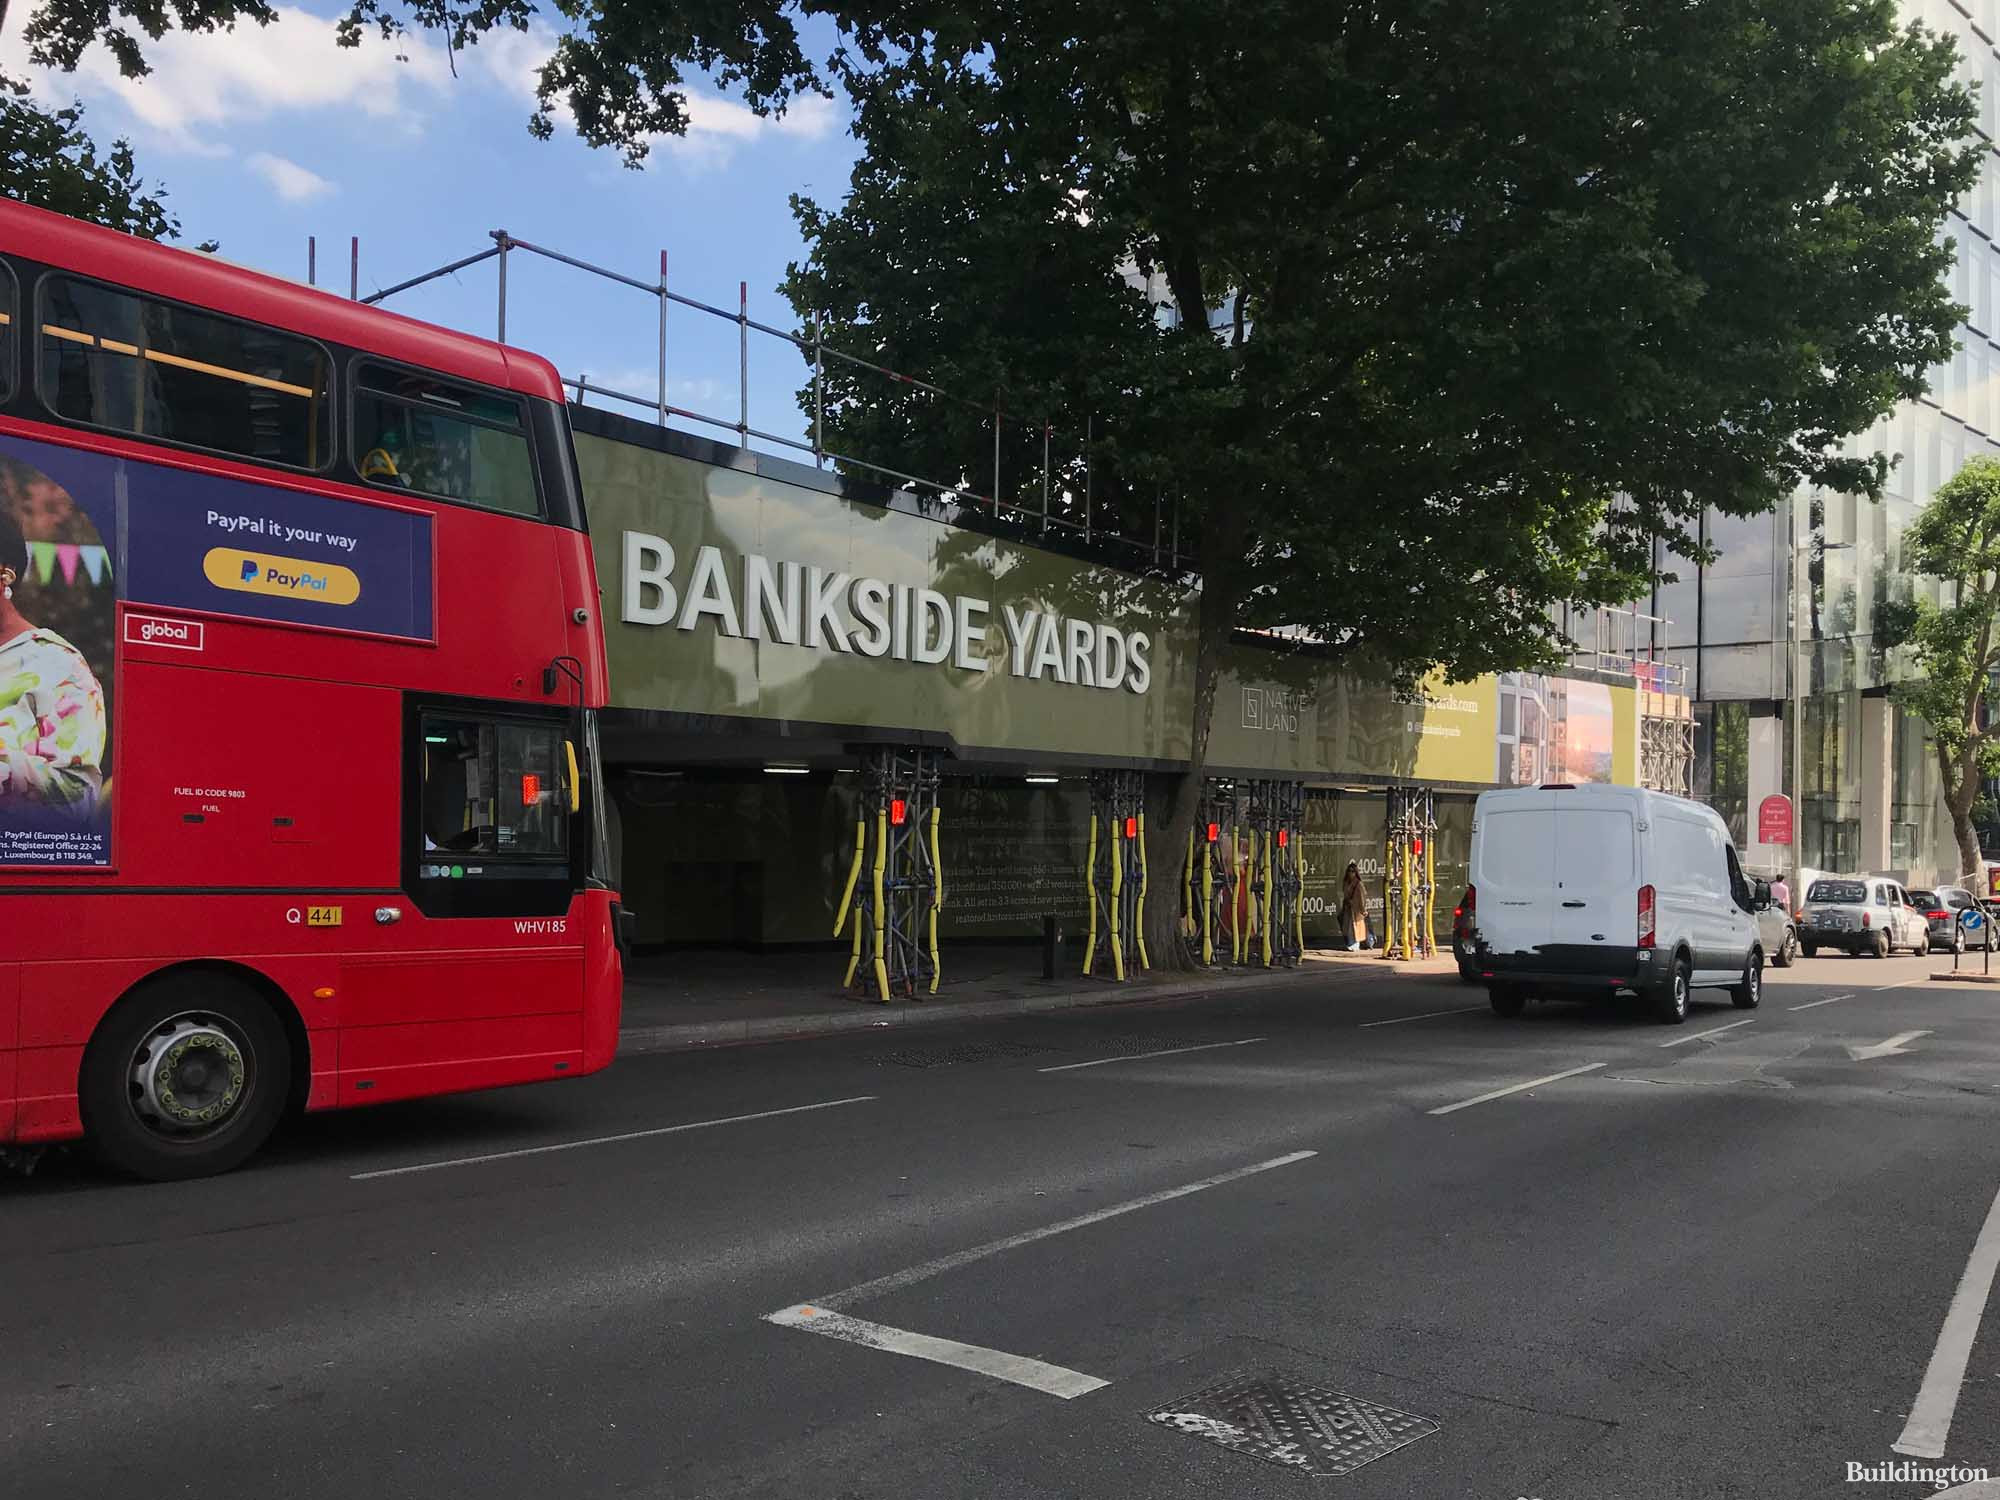 Bankside Yards development in London SE1